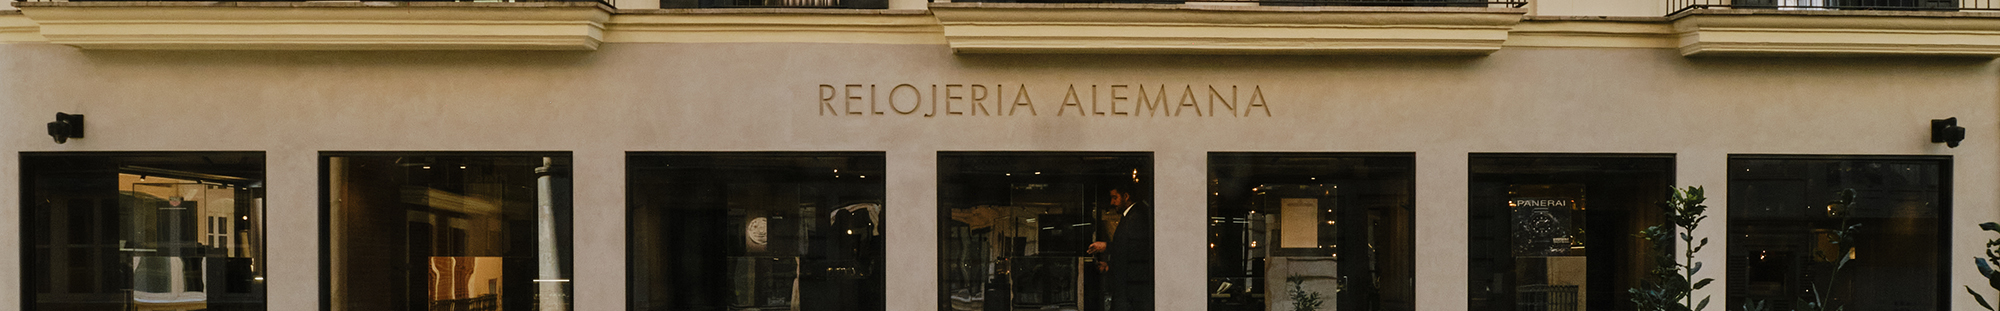 Rolex in Relojería Alemana in Palma de Mallorca calle Colón